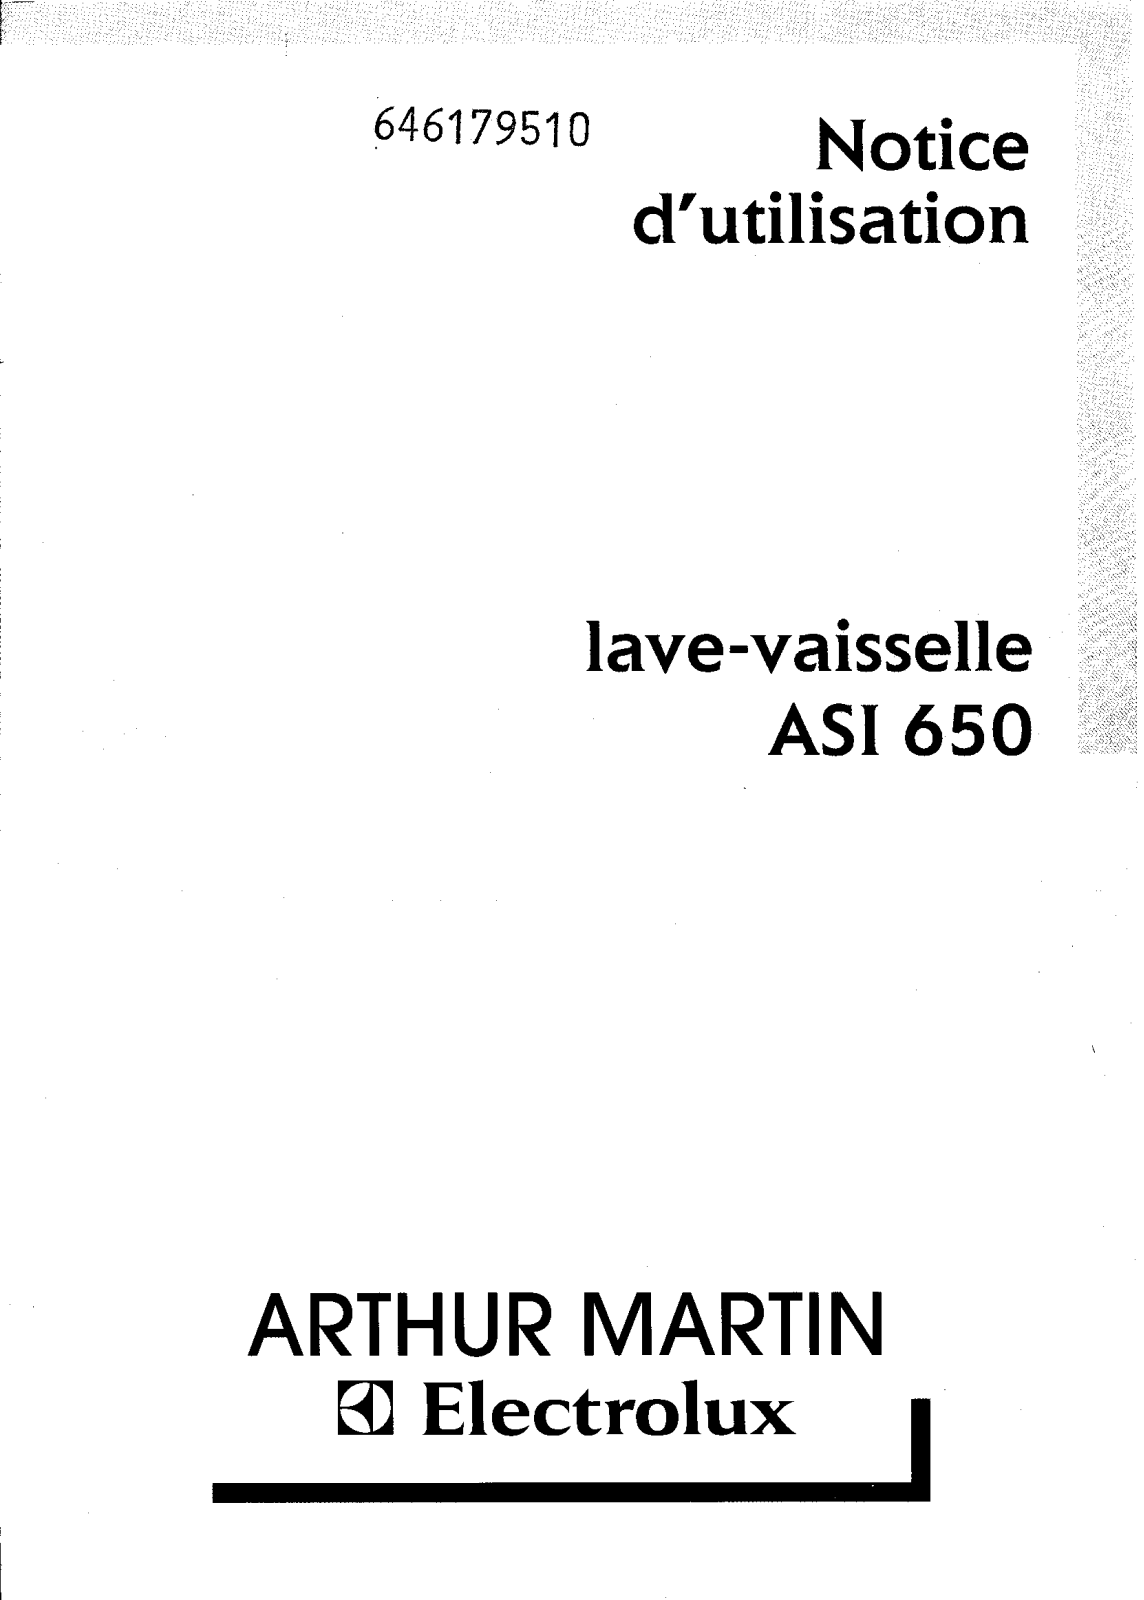 Arthur martin ASI650 User Manual